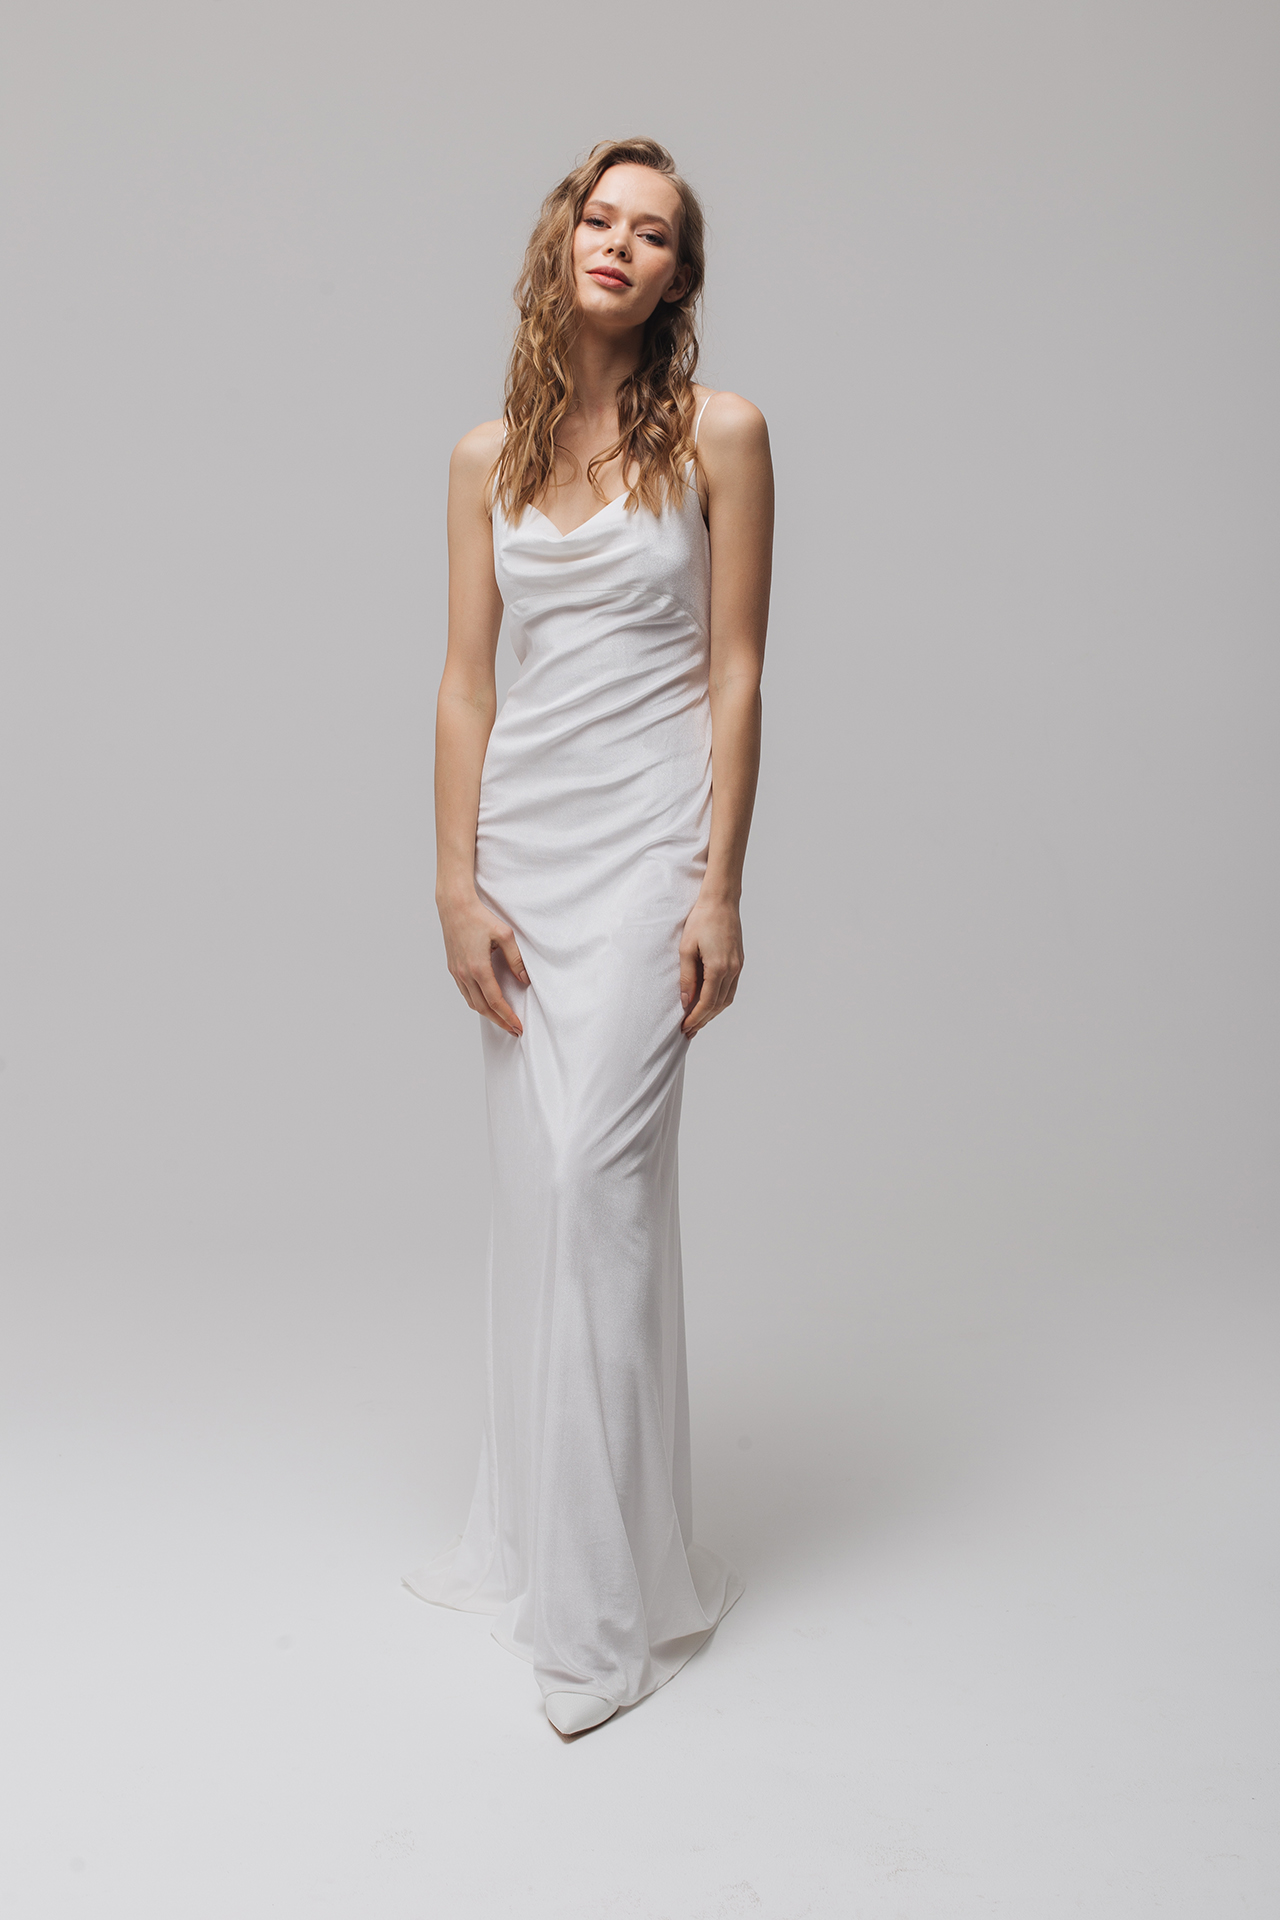 White velvet wedding dress, White velvet bridesmaid dress cowl neckline slip dress style, Velvet bridal gown, Sexy wedding dress, Floriani